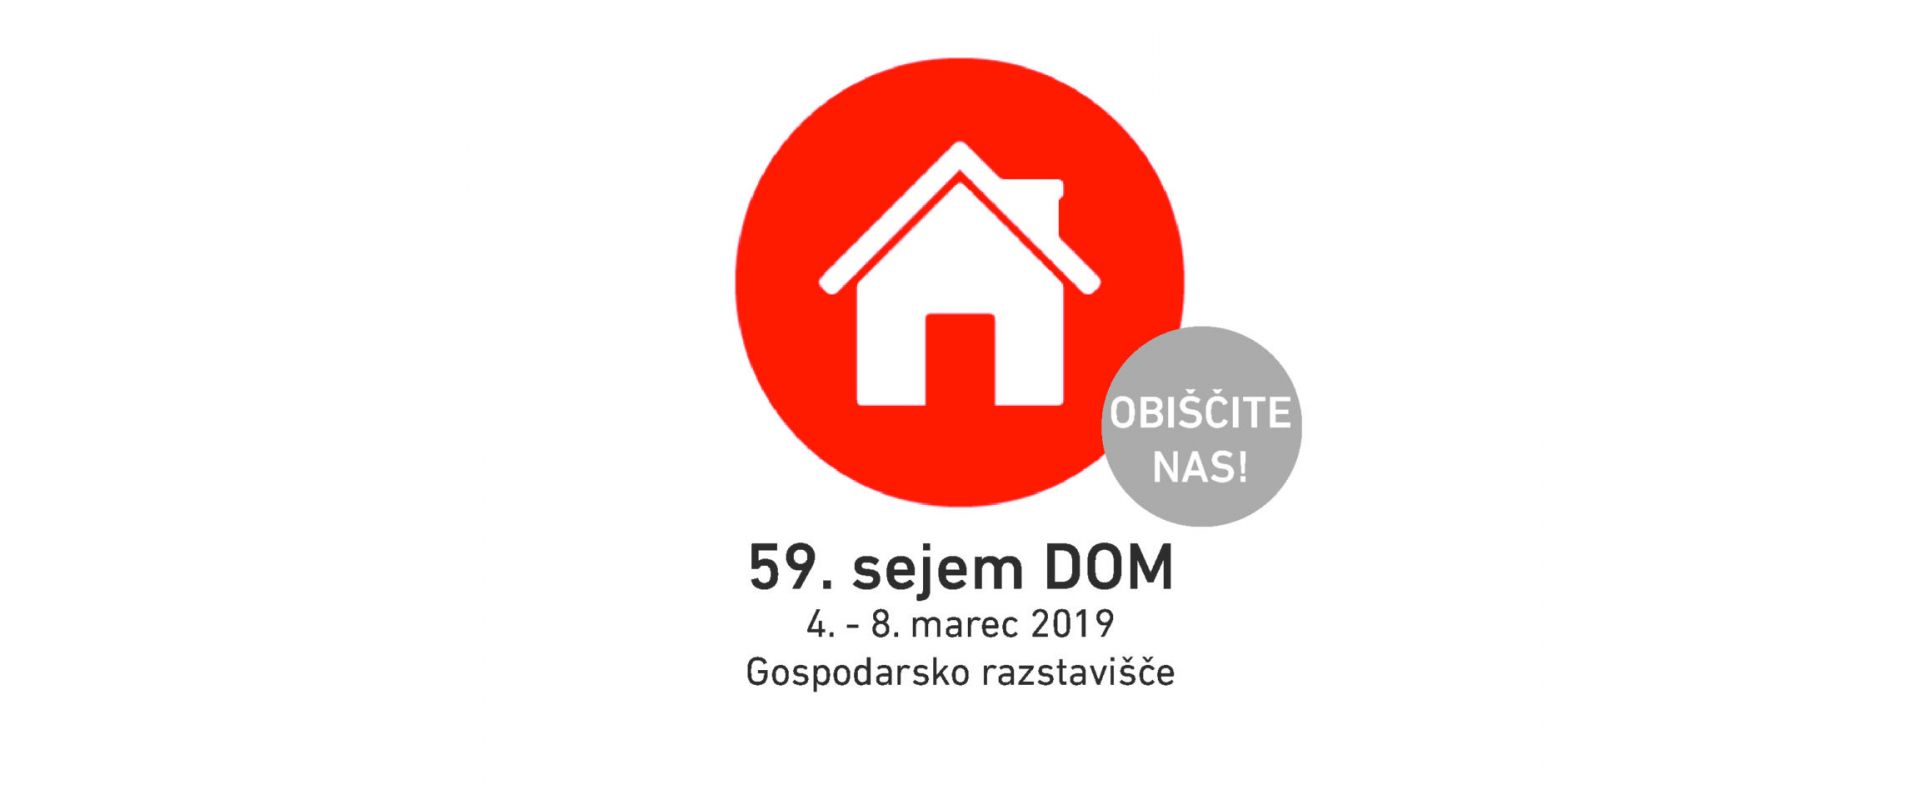 59. sejem DOM 2020 – Gospodarsko razstavišče